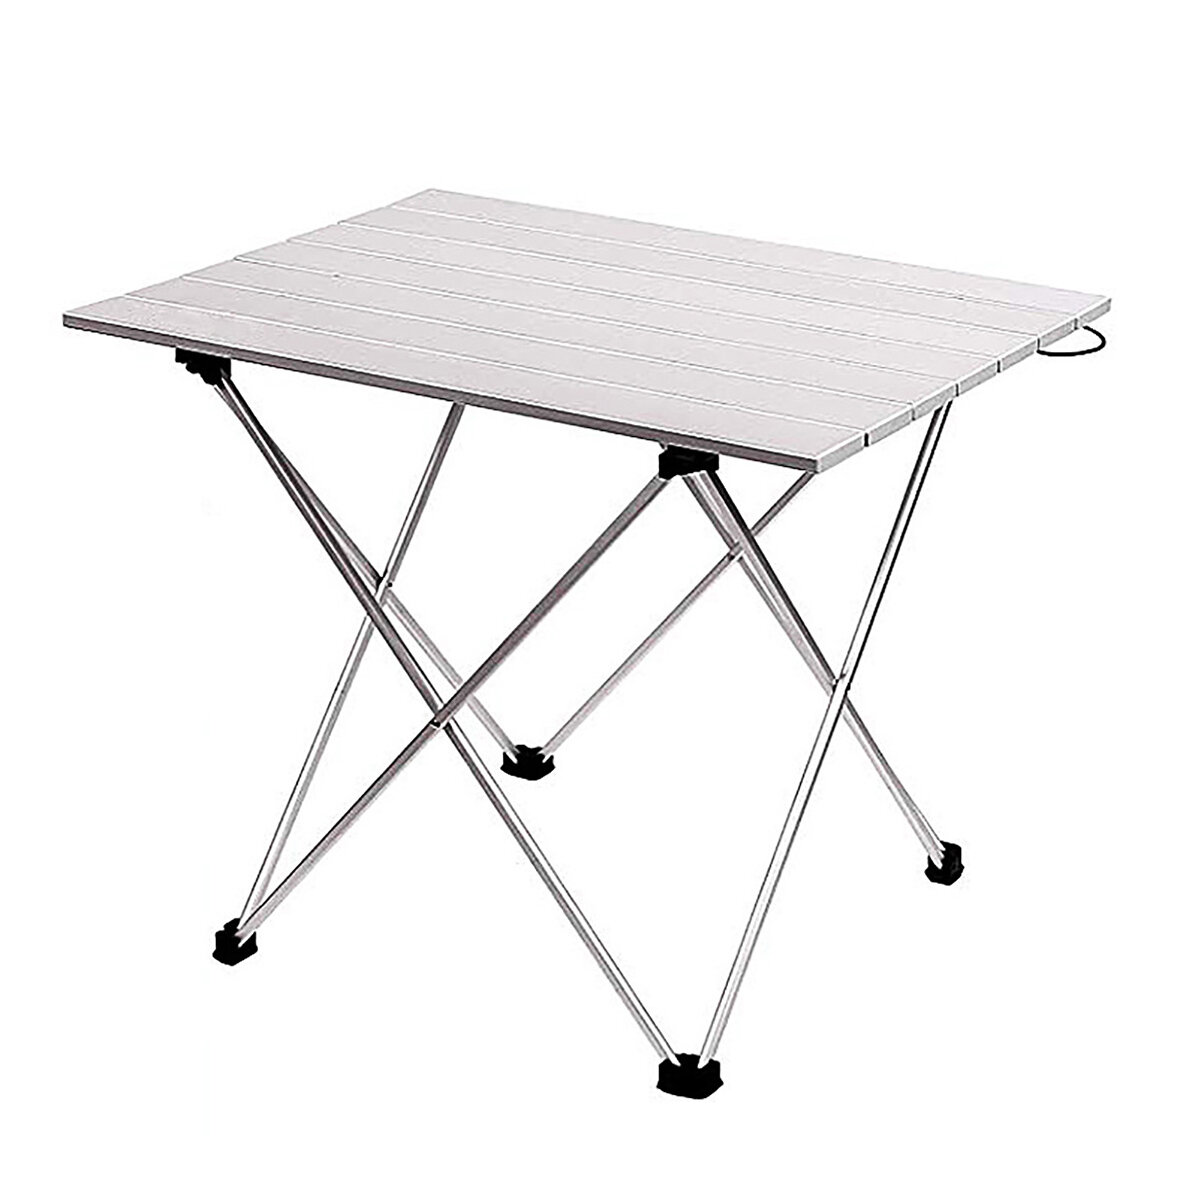 Portable Folding Table Camping Picnic Beach Desk Aluminium Alloy for Outdoor